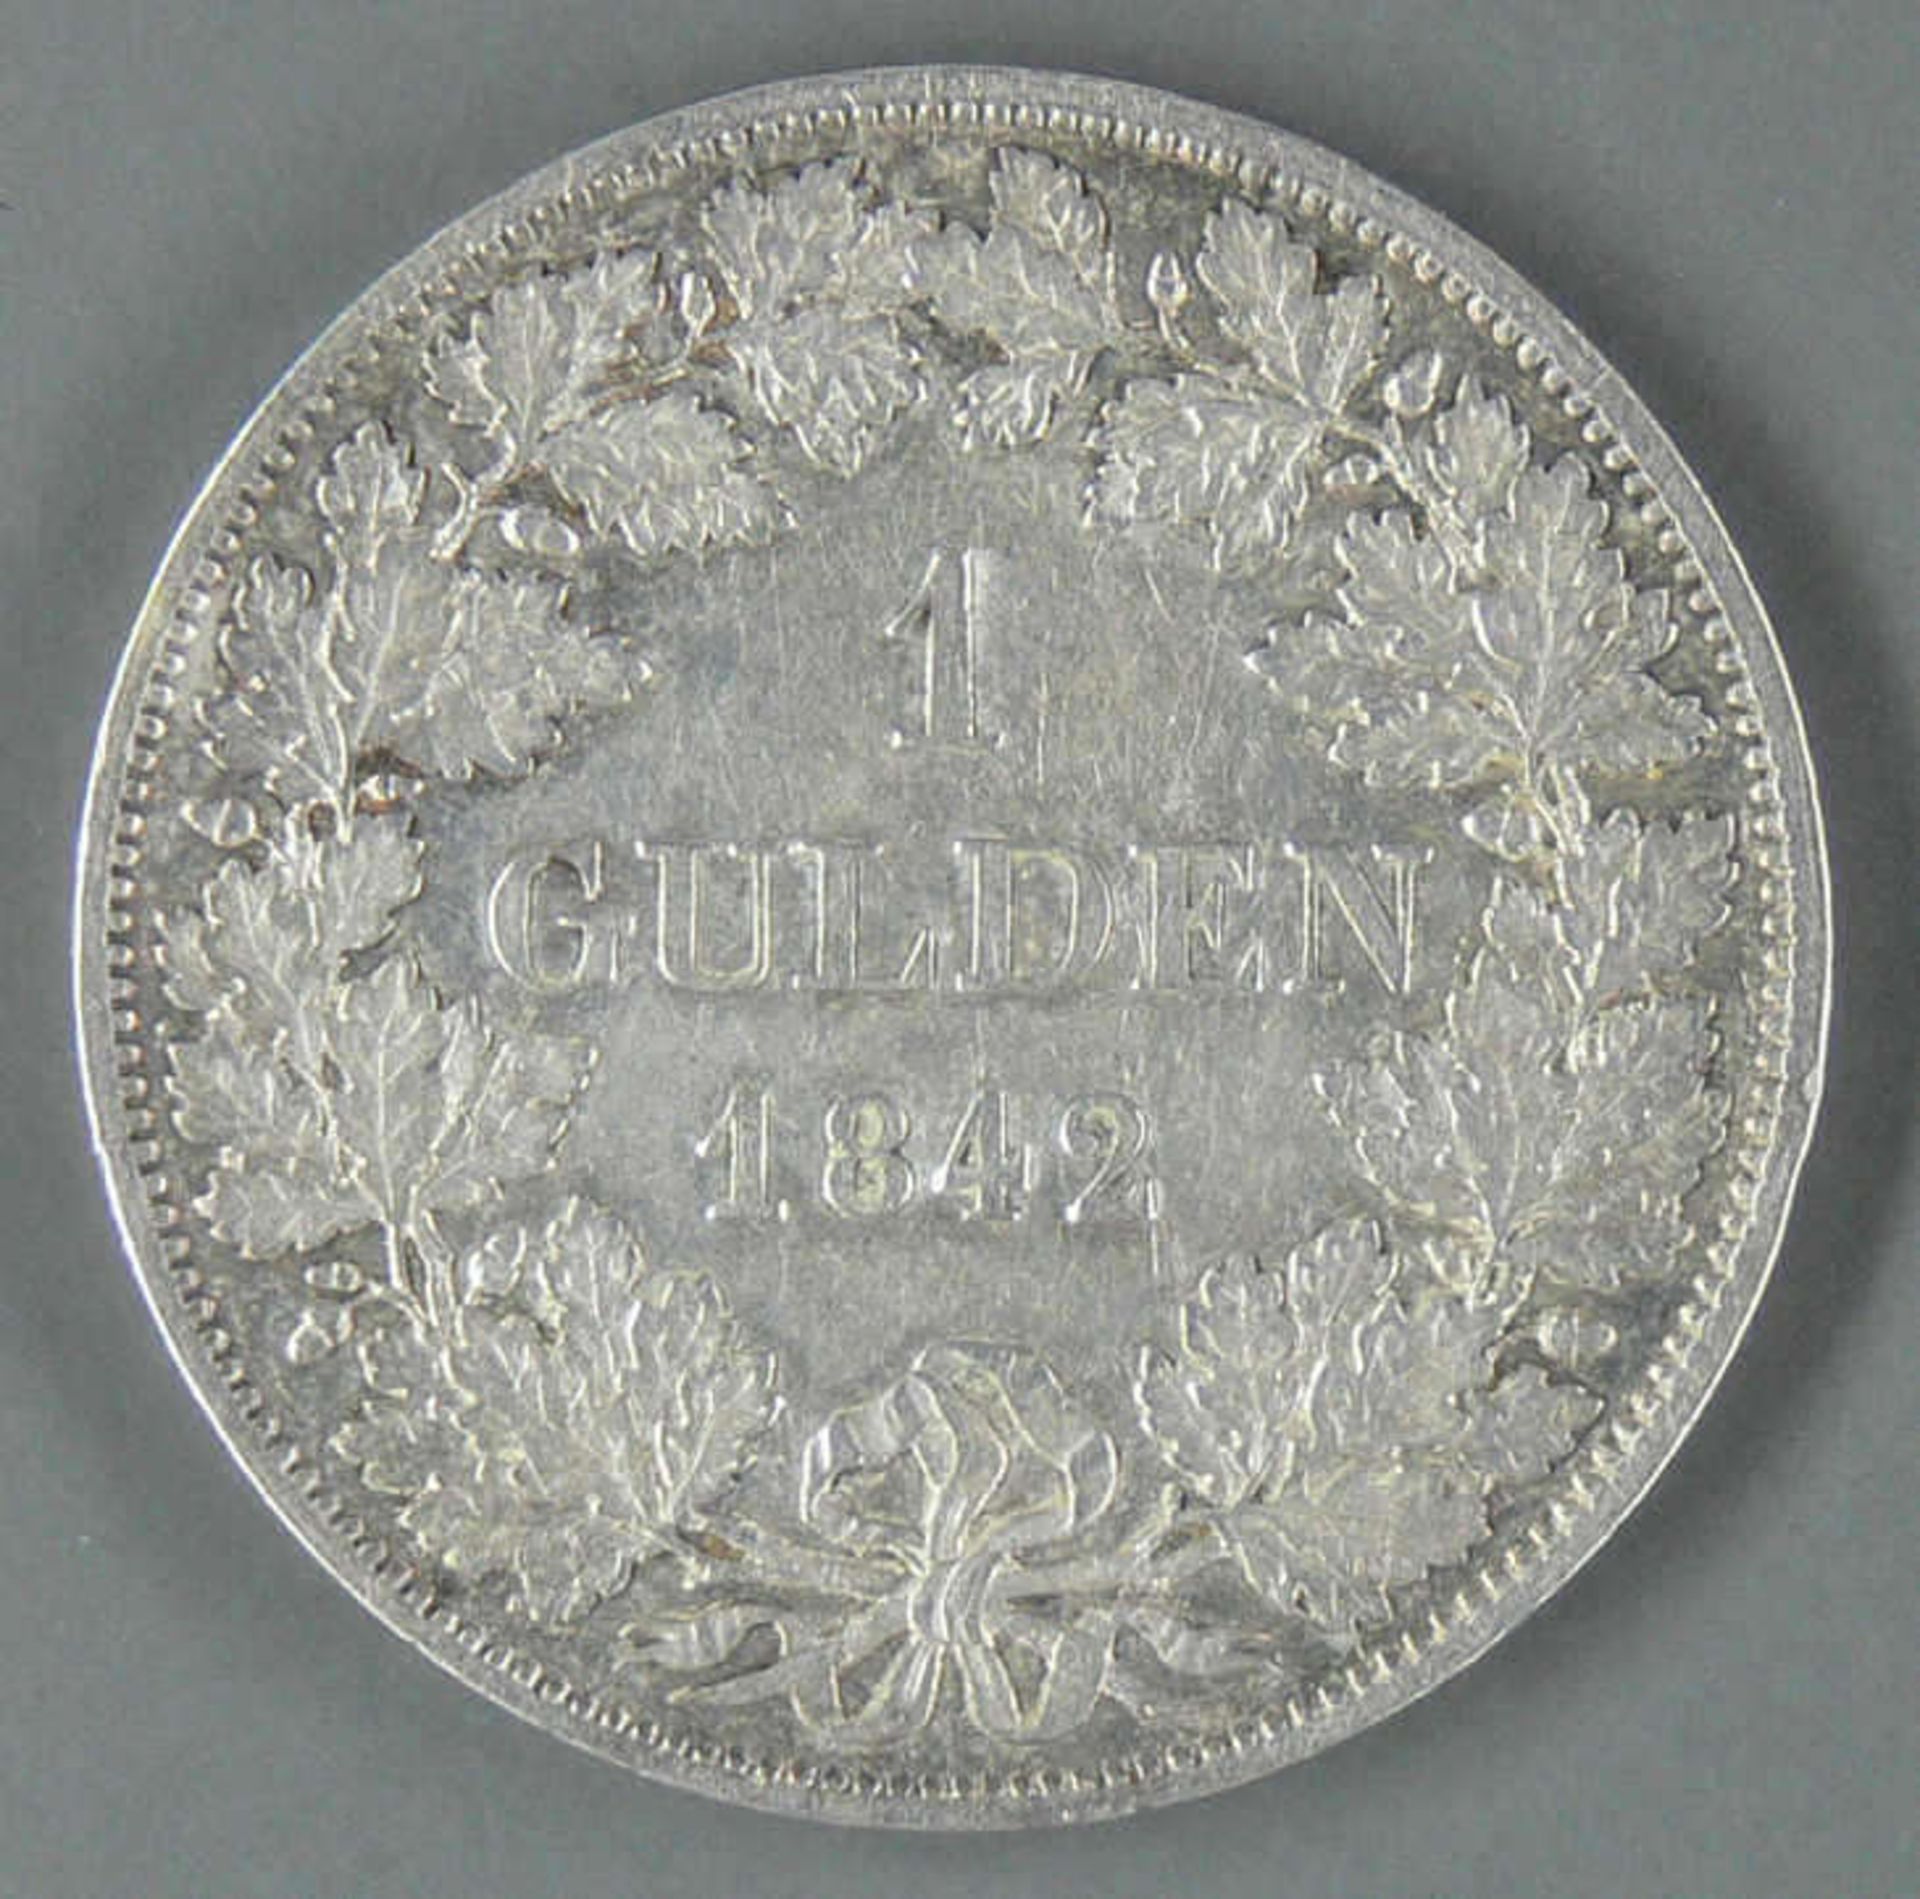 Altdeutschland Bayern 1842, ein Gulden "Ludwig I.". Jaeger: 62, AKS 78. Erhaltung: ss-vz. - Bild 2 aus 2